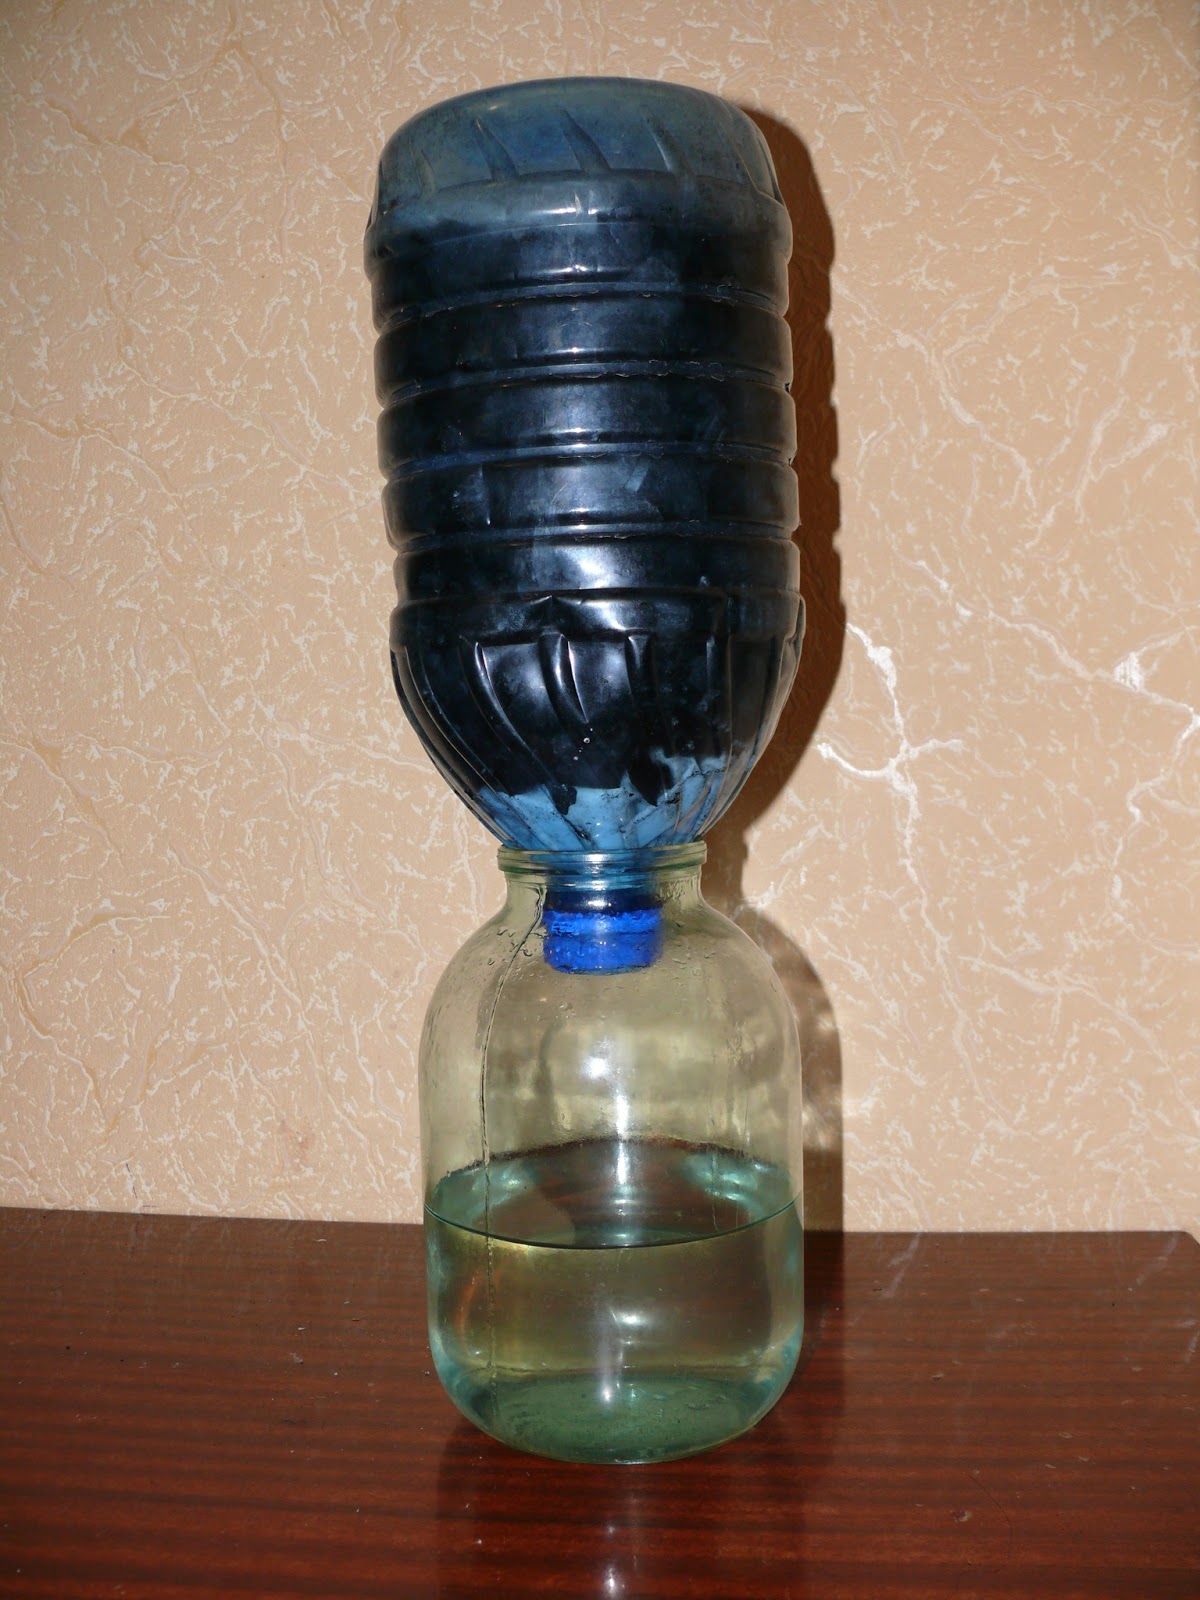 Изготовить фильтр для воды. Фильтр для воды из бутылки. Фильтр для воды из пластиковой бутылки. Угольный фильтр из бутылки. Фильтр из бутылки для самогона.